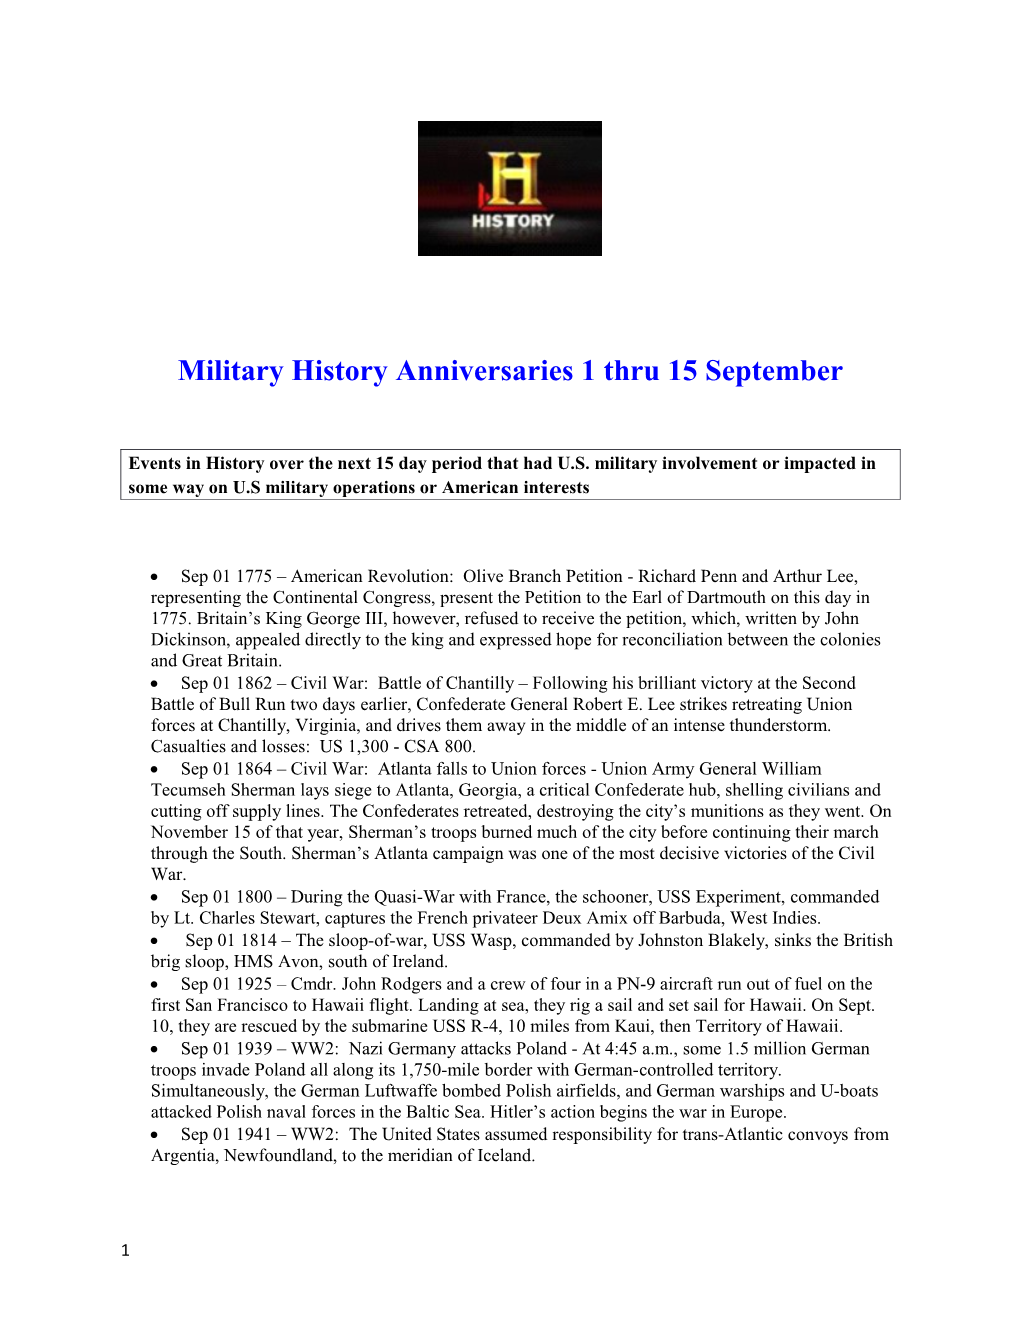 Military History Anniversaries 1 Thru 15 September